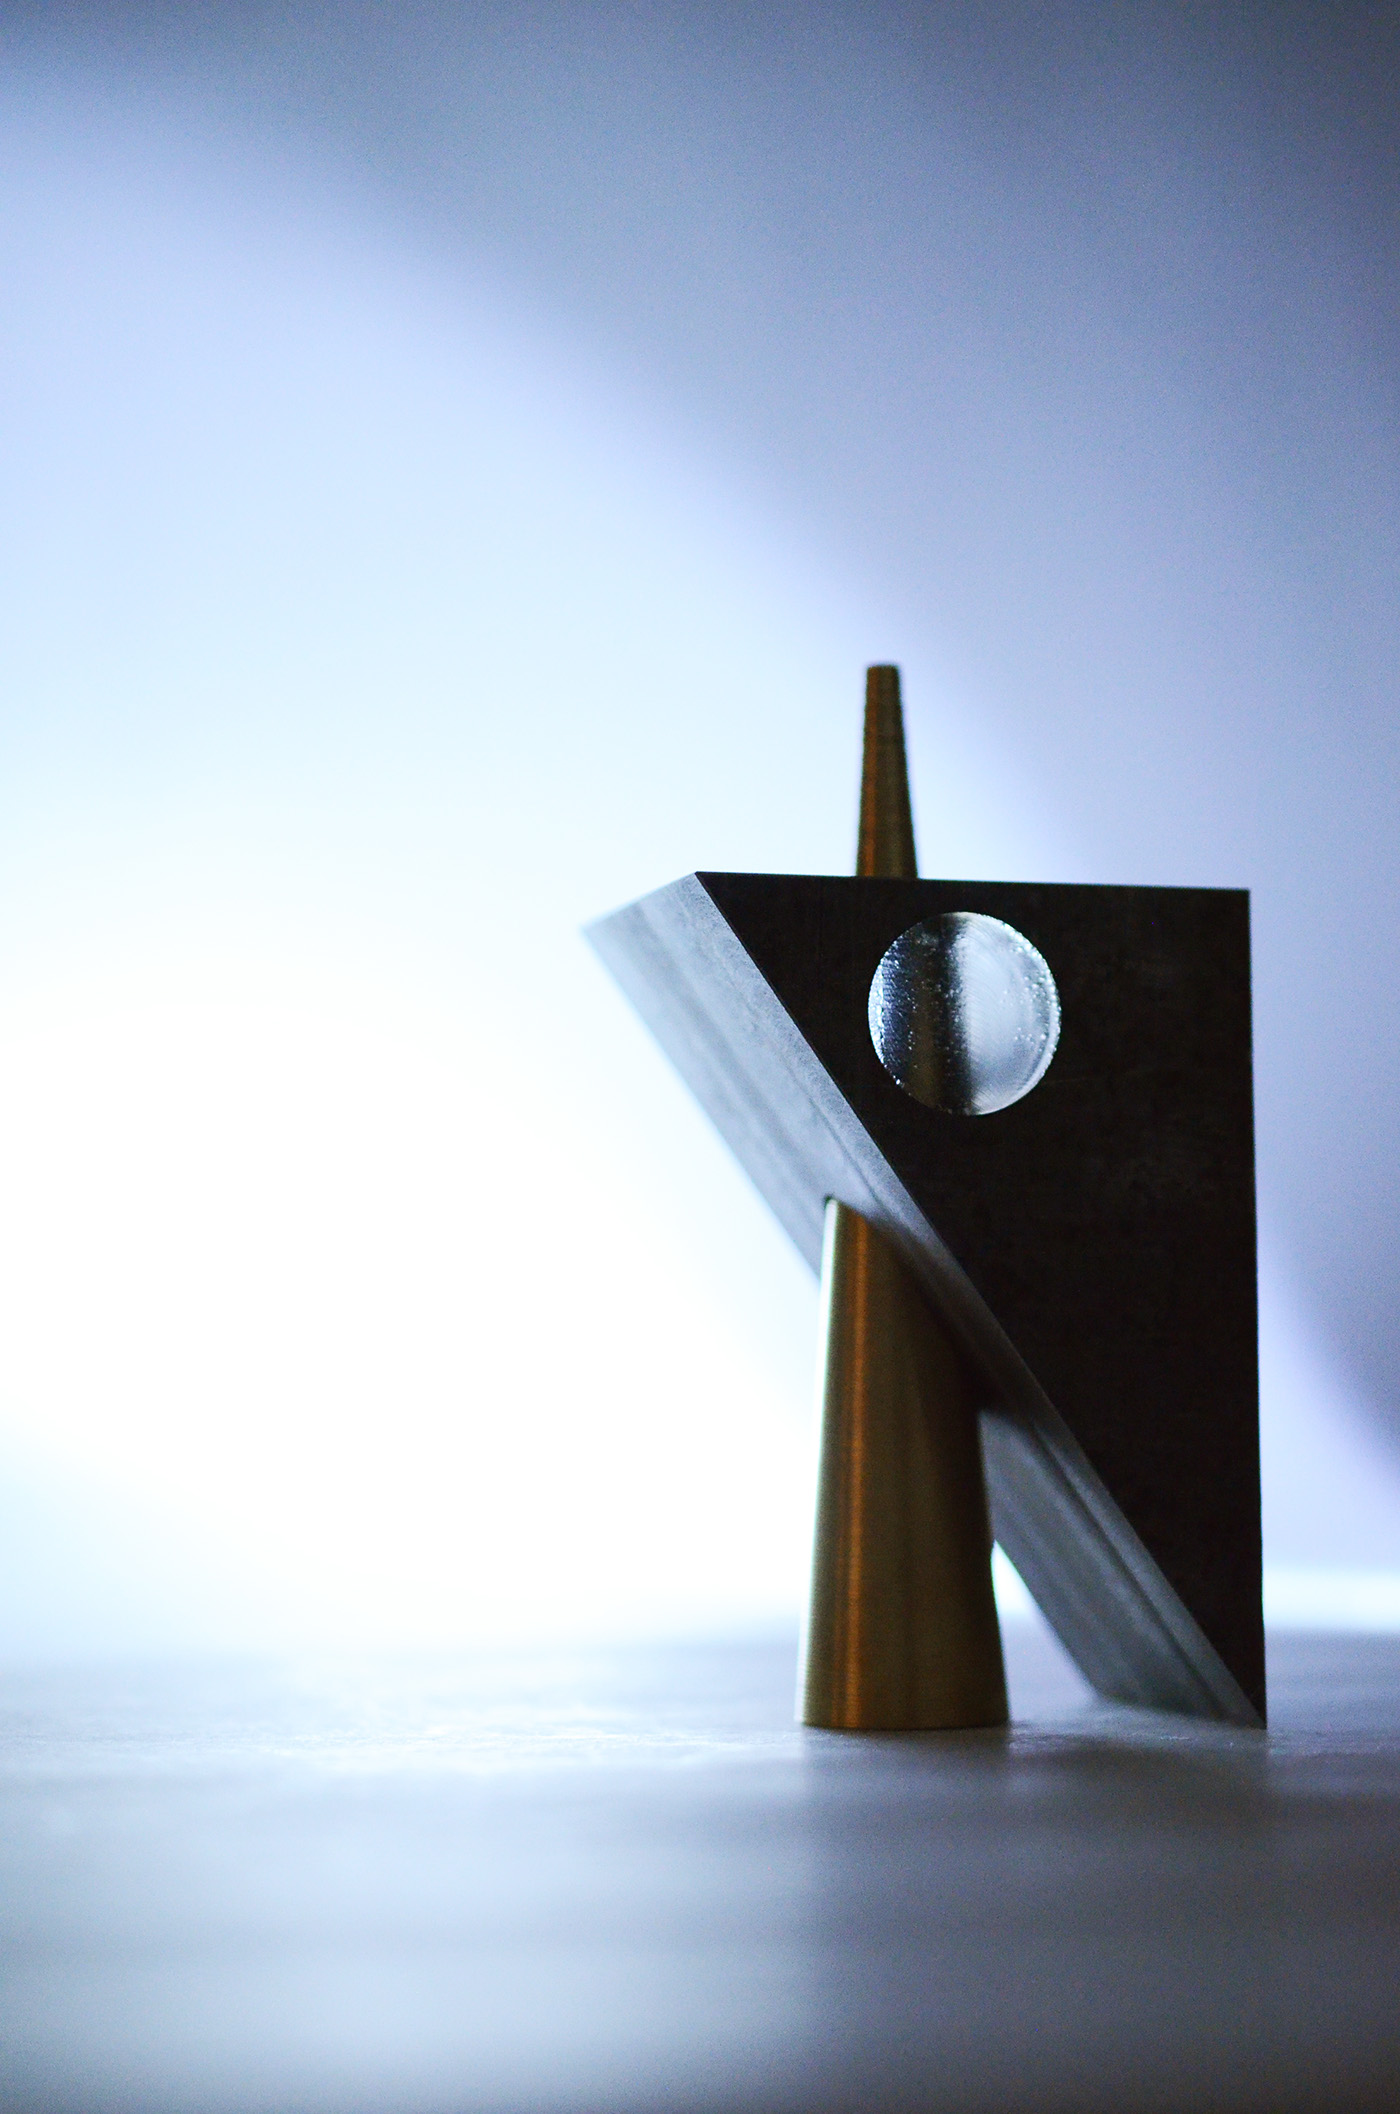 Machining Metals II Form geometric sculpture Window Solids Bridgeport fabrication